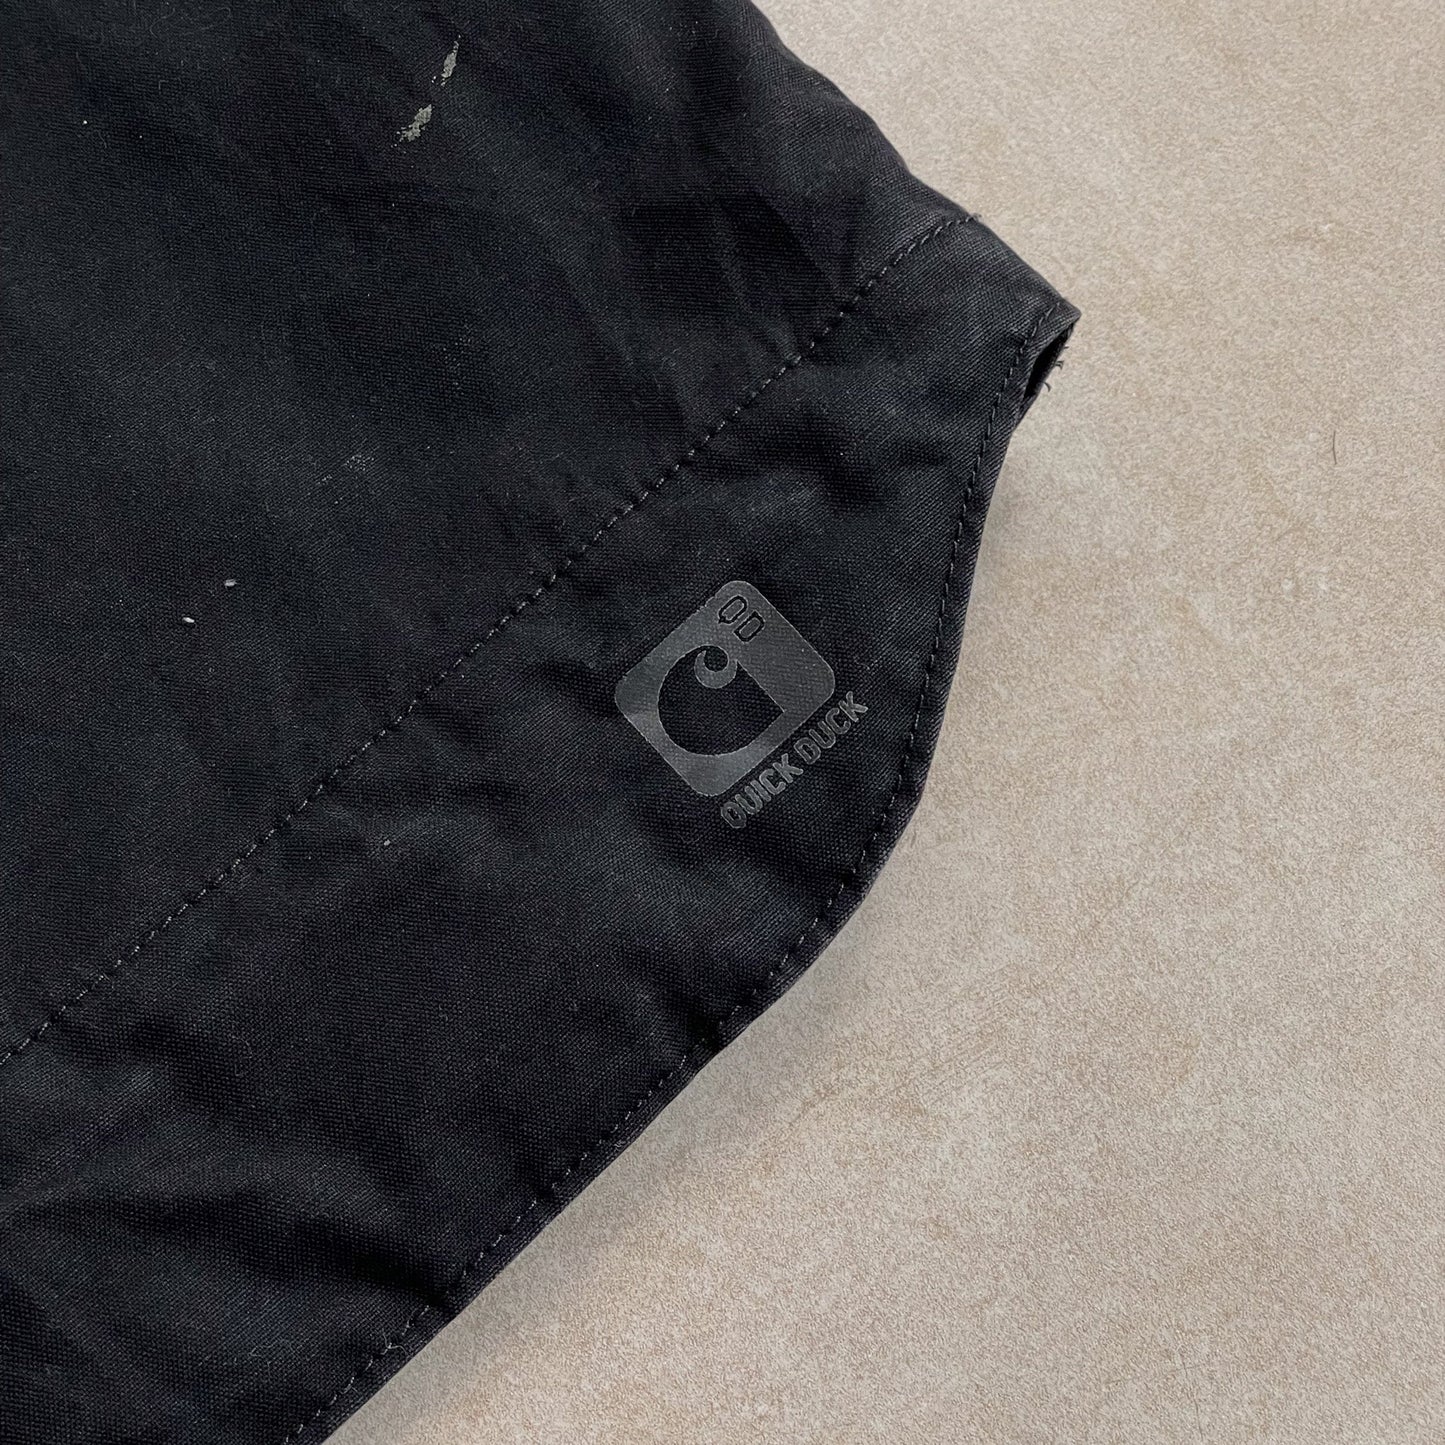 2000s Carhartt Quilted Gillet Black Vest - L sullivansvintage